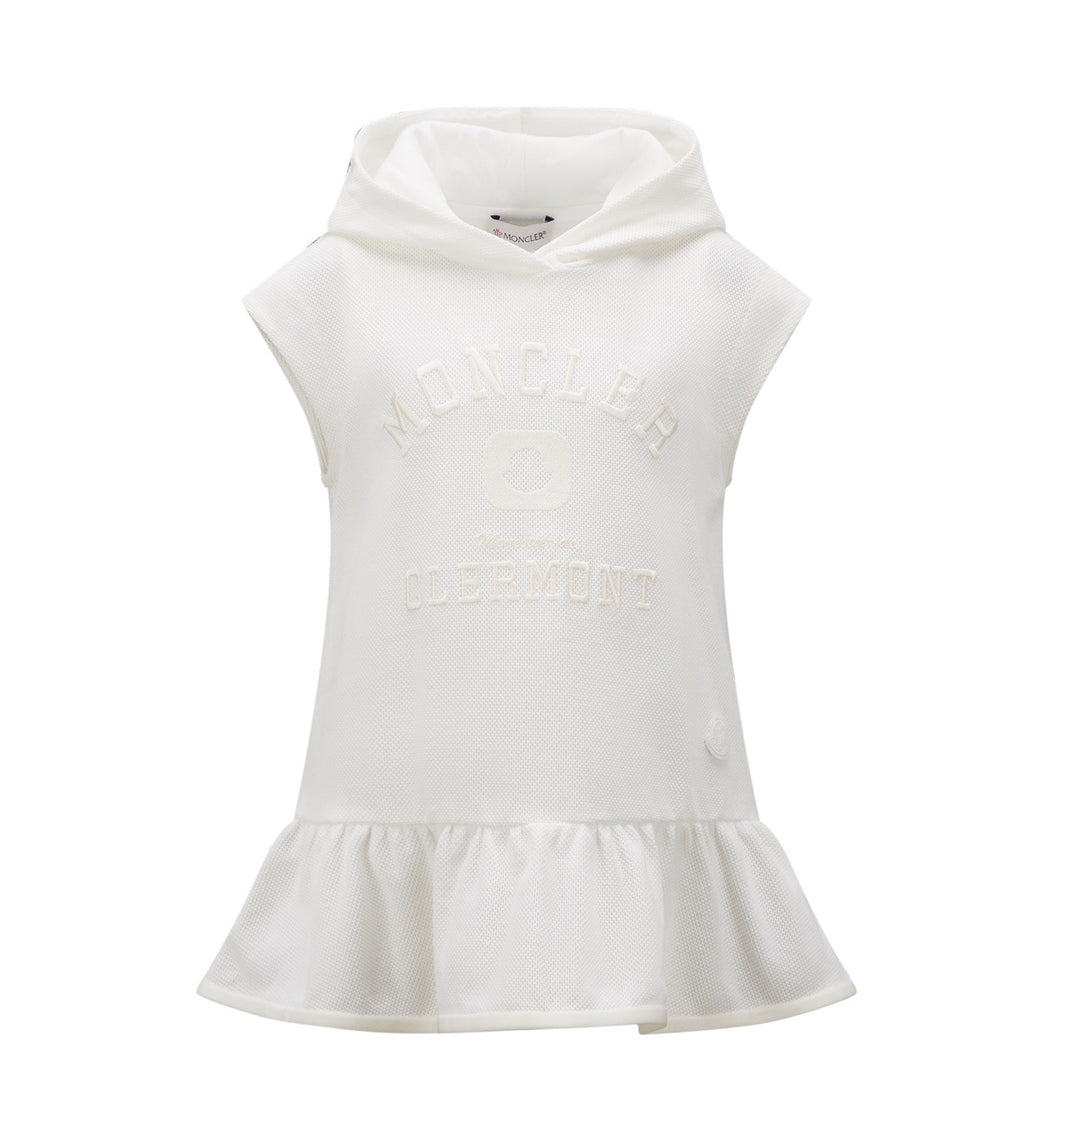 moncler-White Hooded Dress-i1-954-8i000-05-899yv-034